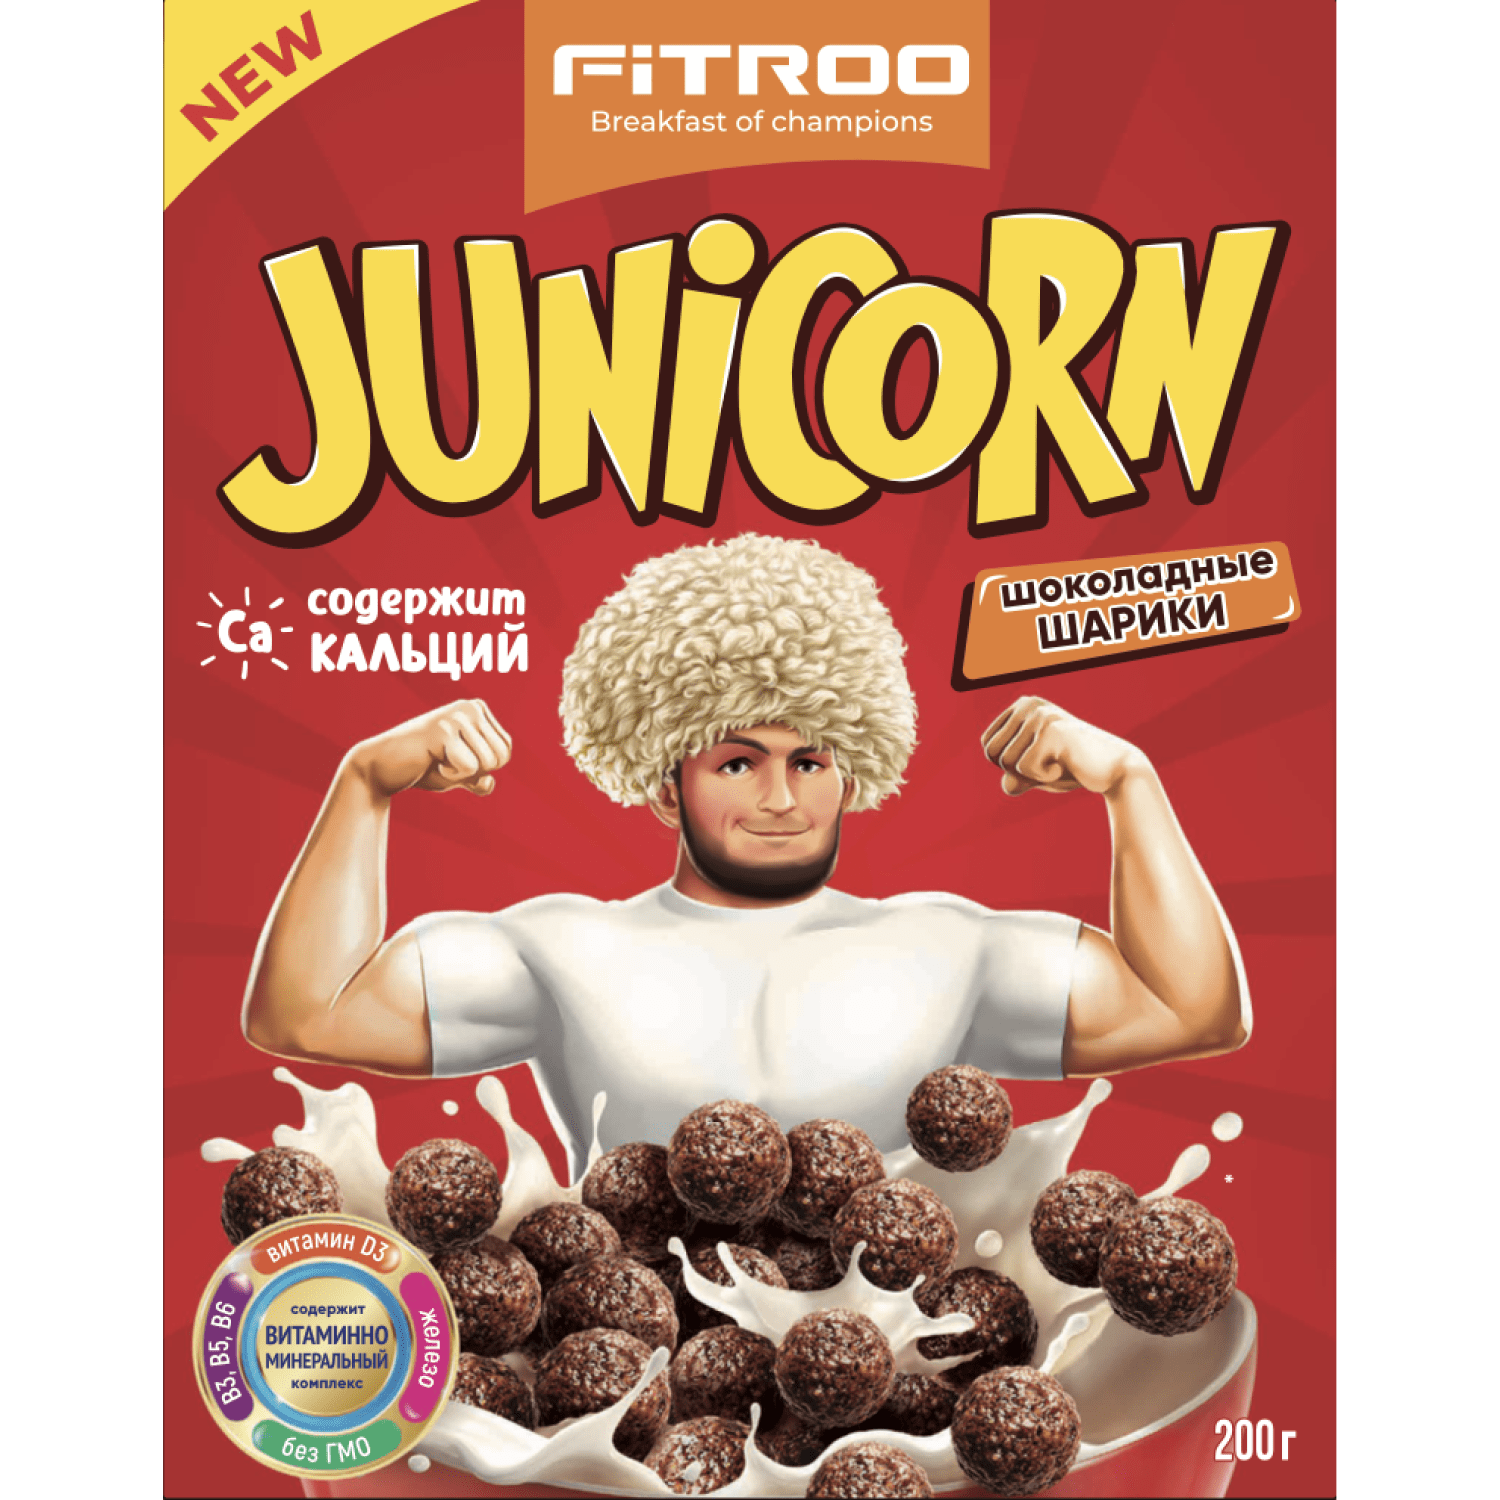 Готовый завтрак FITROO шоколадные шарики 200г - фото 1